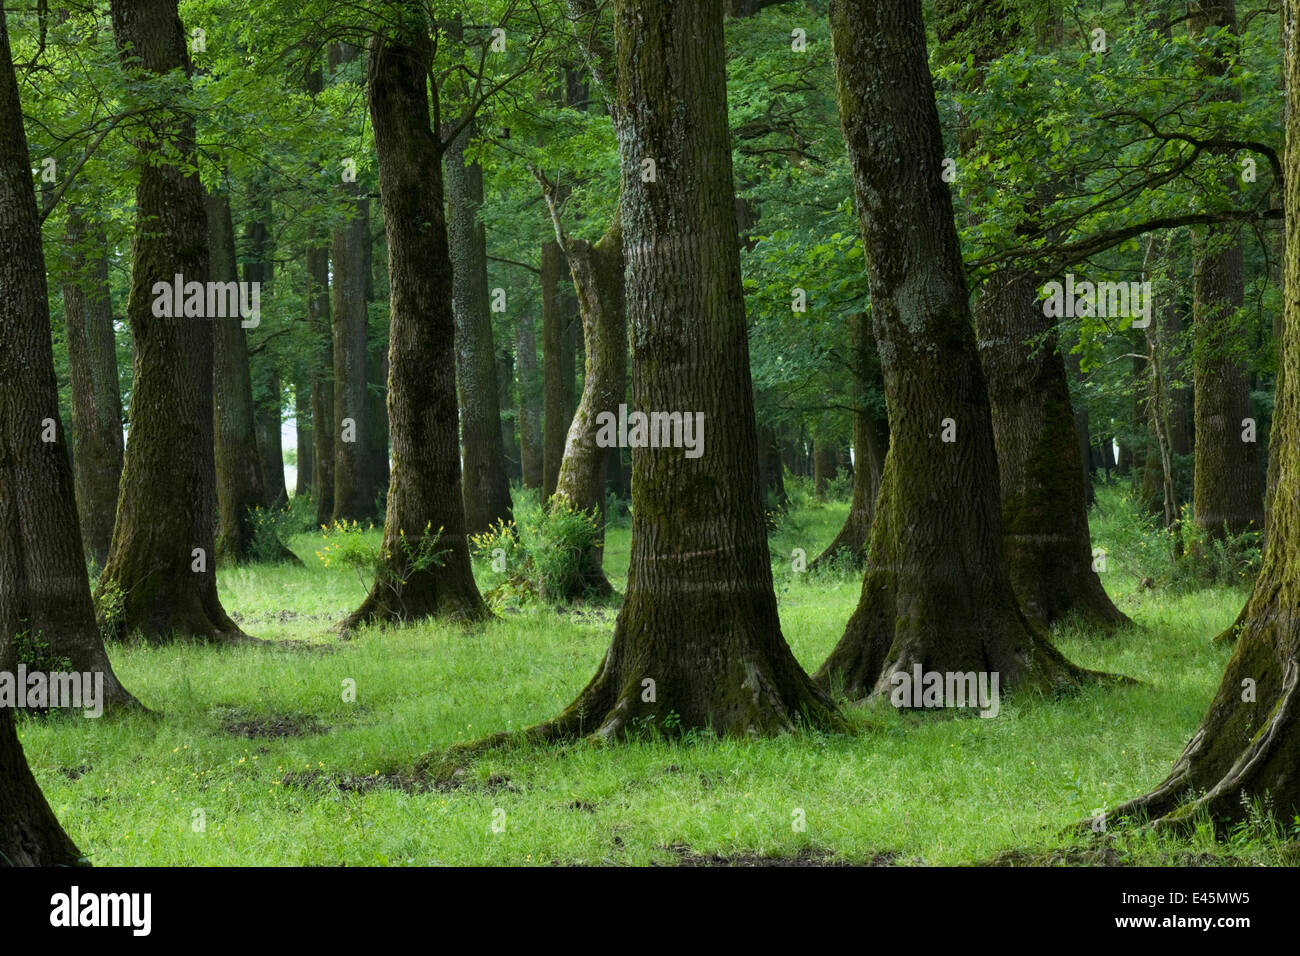 Slavonia Comune / quercia (Quercus robur) e cenere (Fraxinus sp) foresta, vicino al villaggio di Mužilovcica, Lonjsko polje Nature Park, Sisack-Moslavina county, regione della Slavonia, Posavina area, Croazia, Giugno 2009 Foto Stock